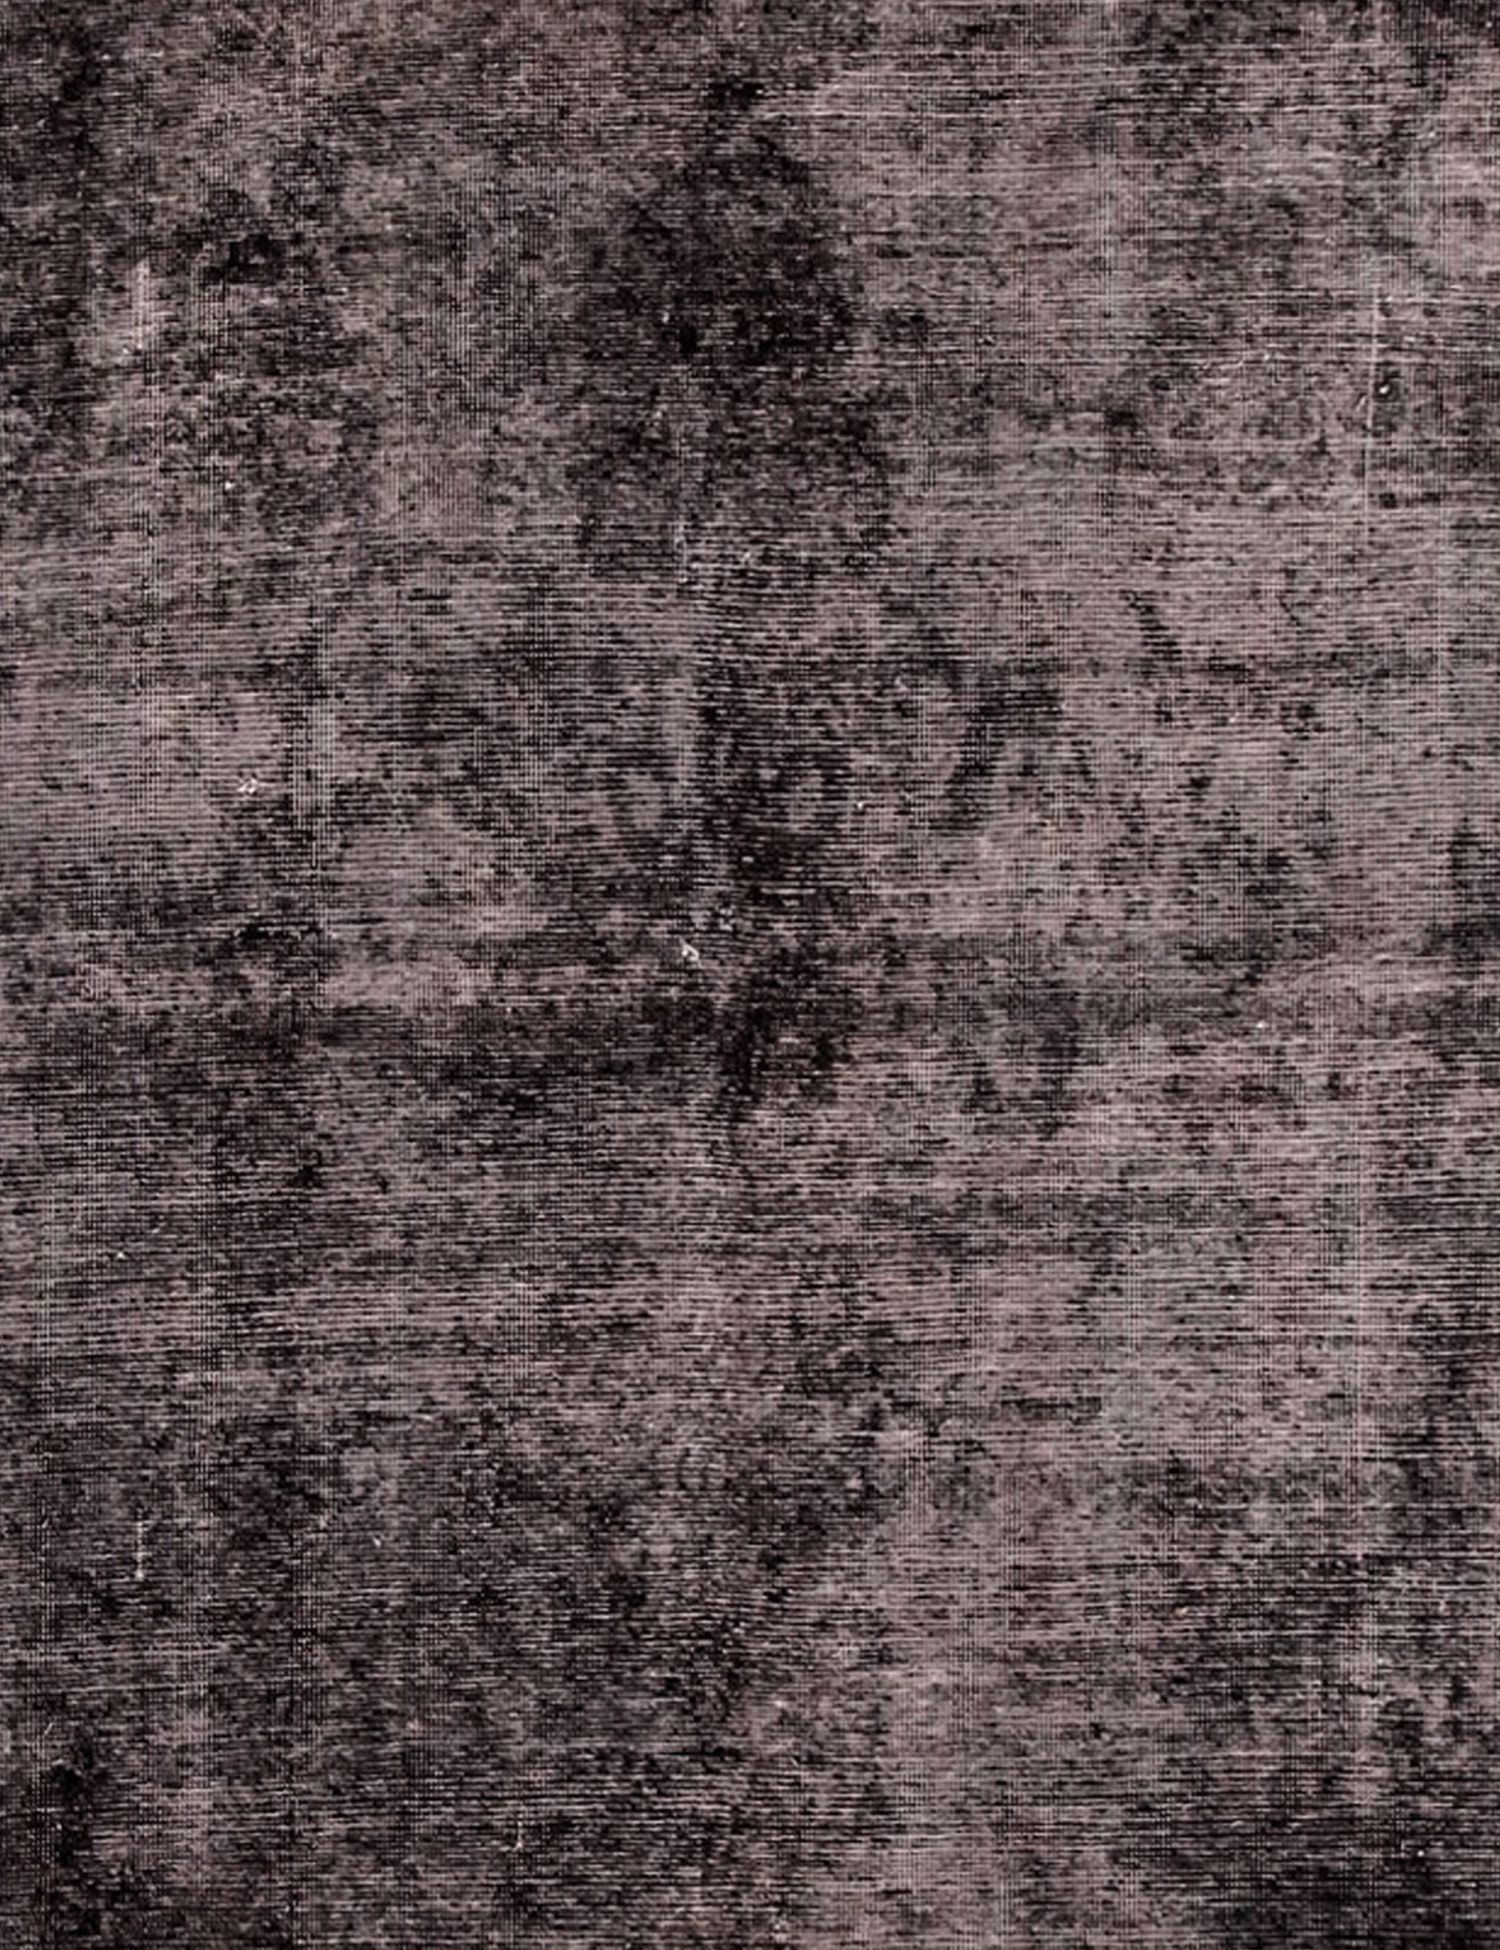 Persischer Vintage Teppich  schwarz <br/>235 x 120 cm